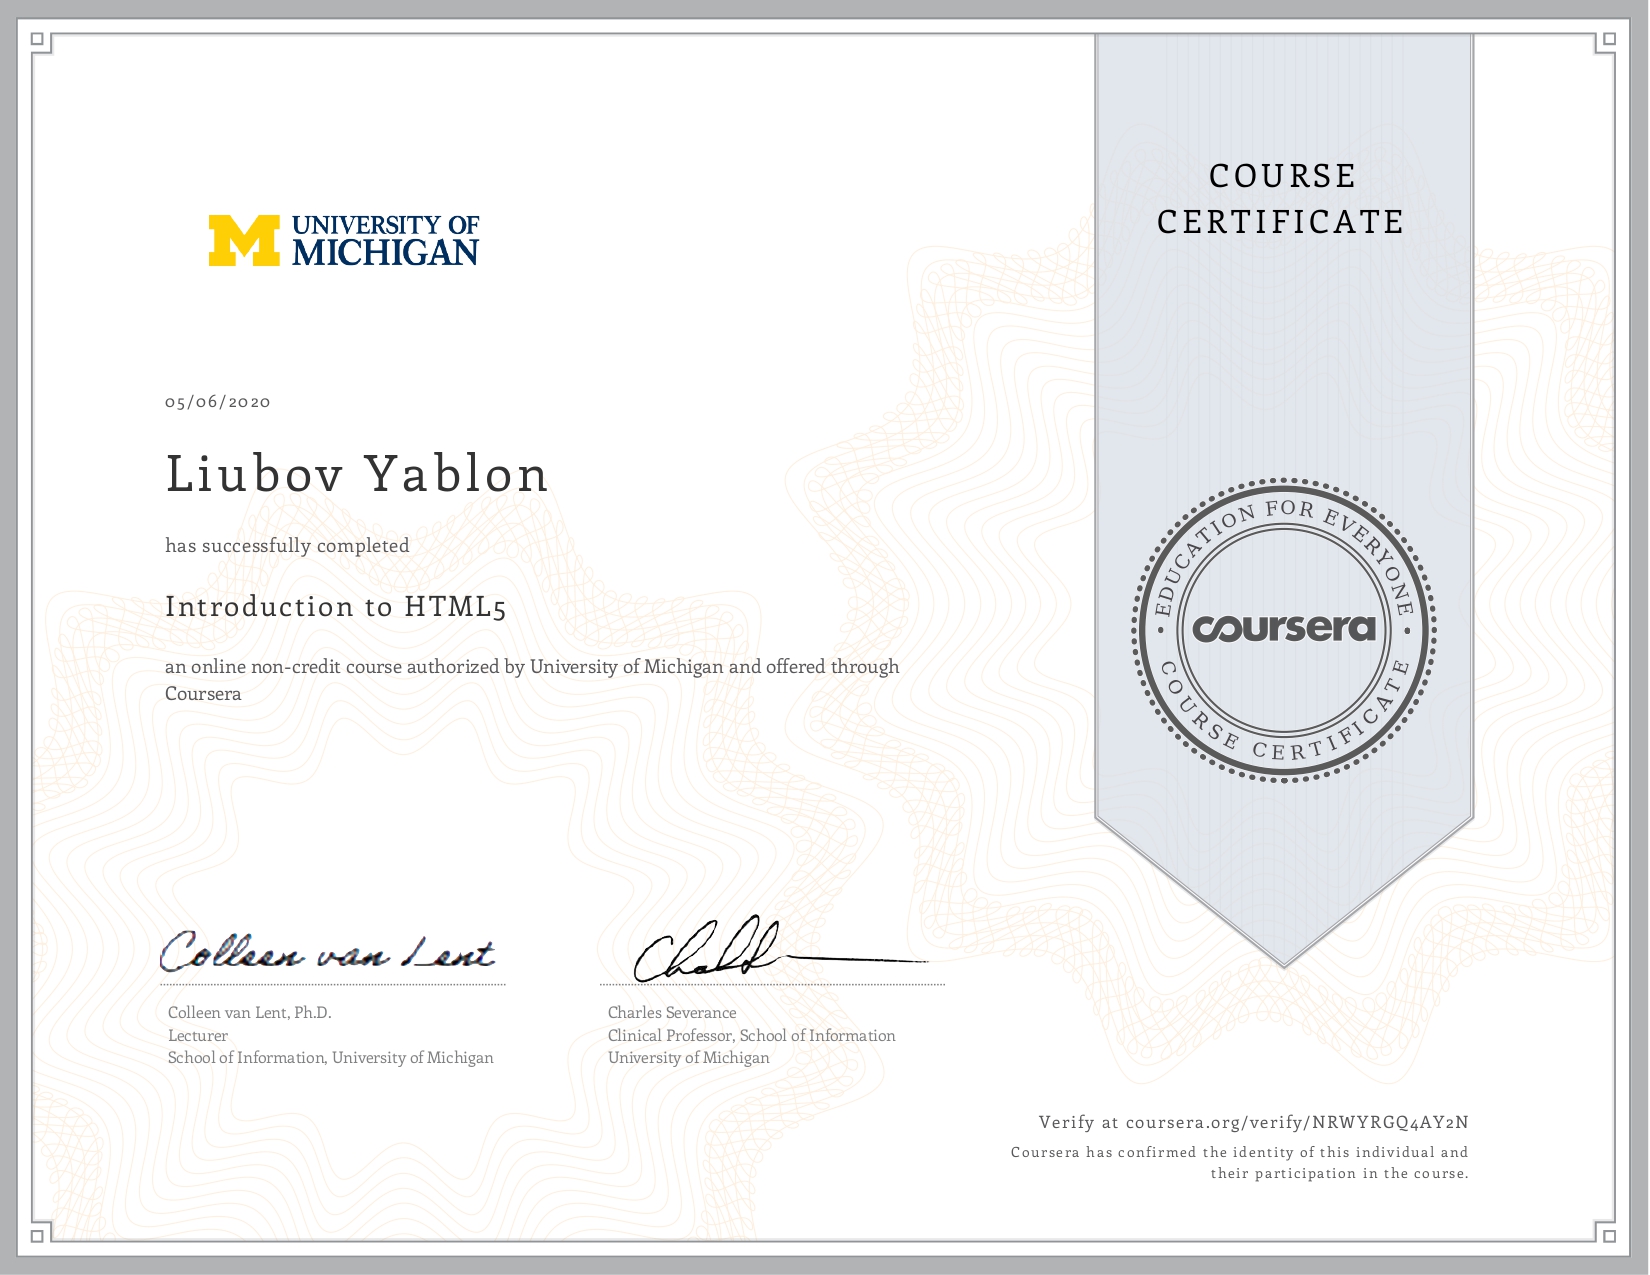 Coursera Certificate Clear.